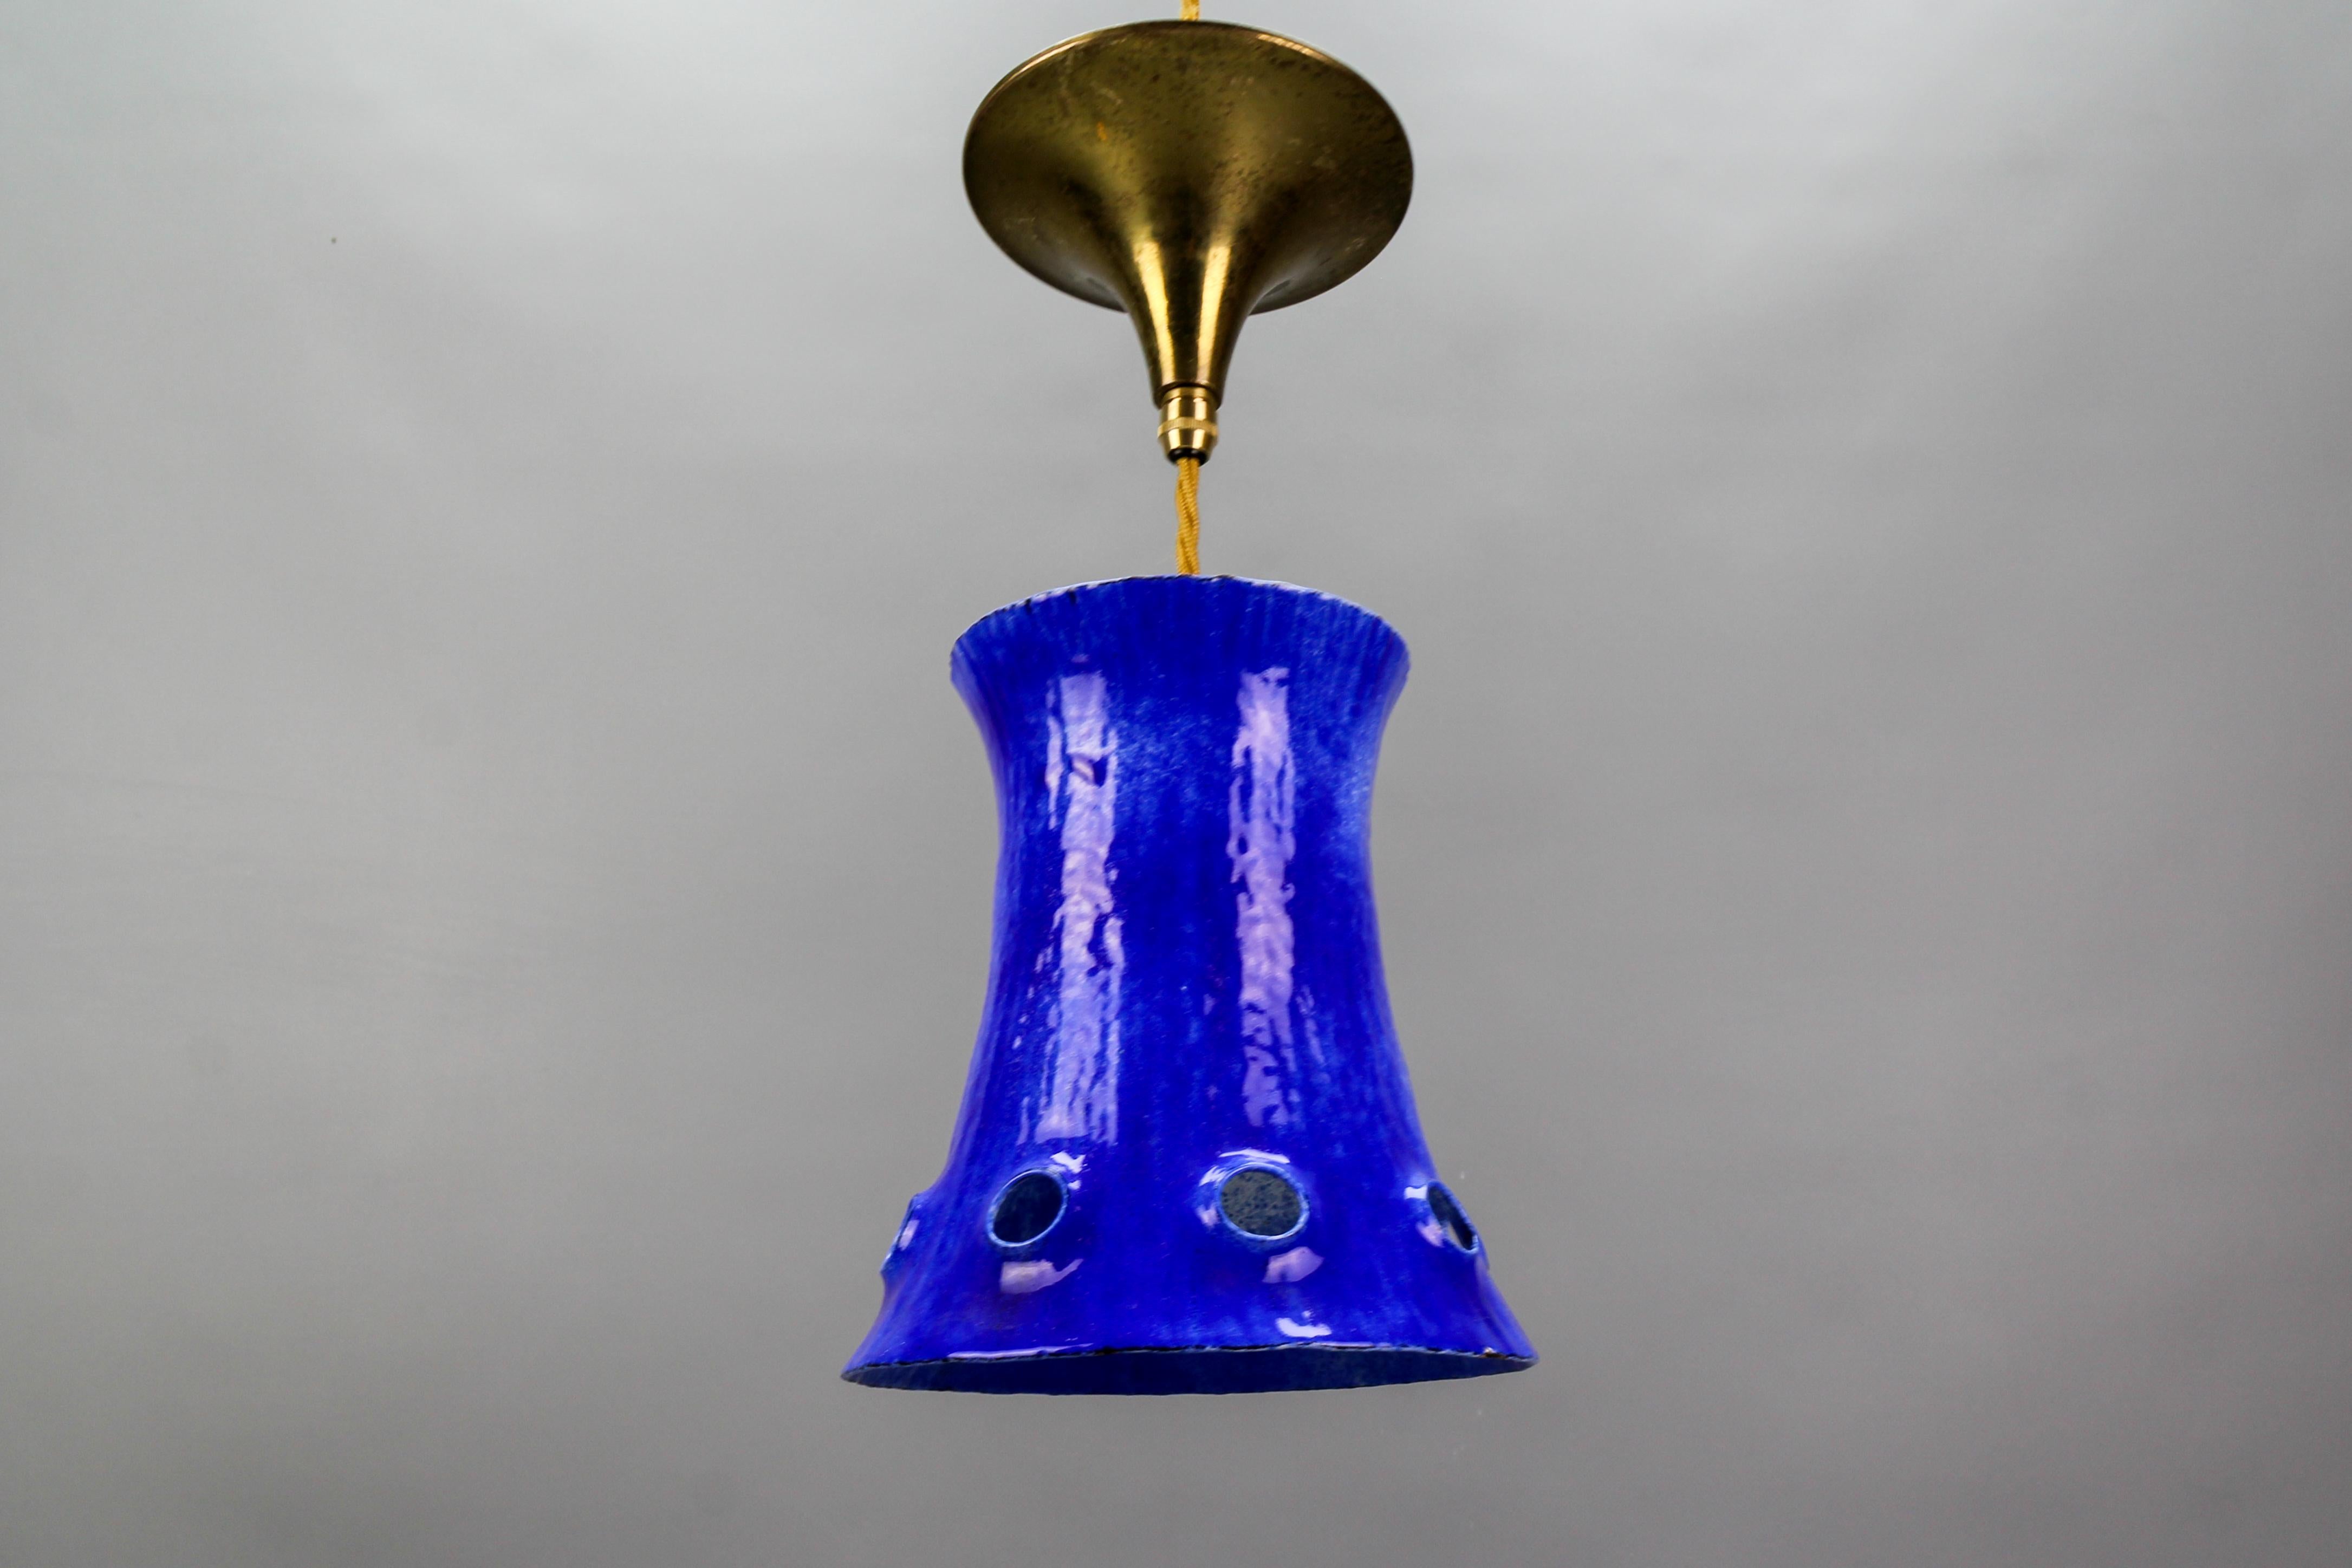 Suspension en fer émaillé bleu de style moderne du milieu du siècle dernier, datant des années 1960.
Cette magnifique lampe suspendue présente un abat-jour en fer émaillé en forme de cloche, avec un émail bleu à l'extérieur et blanc et bleu à